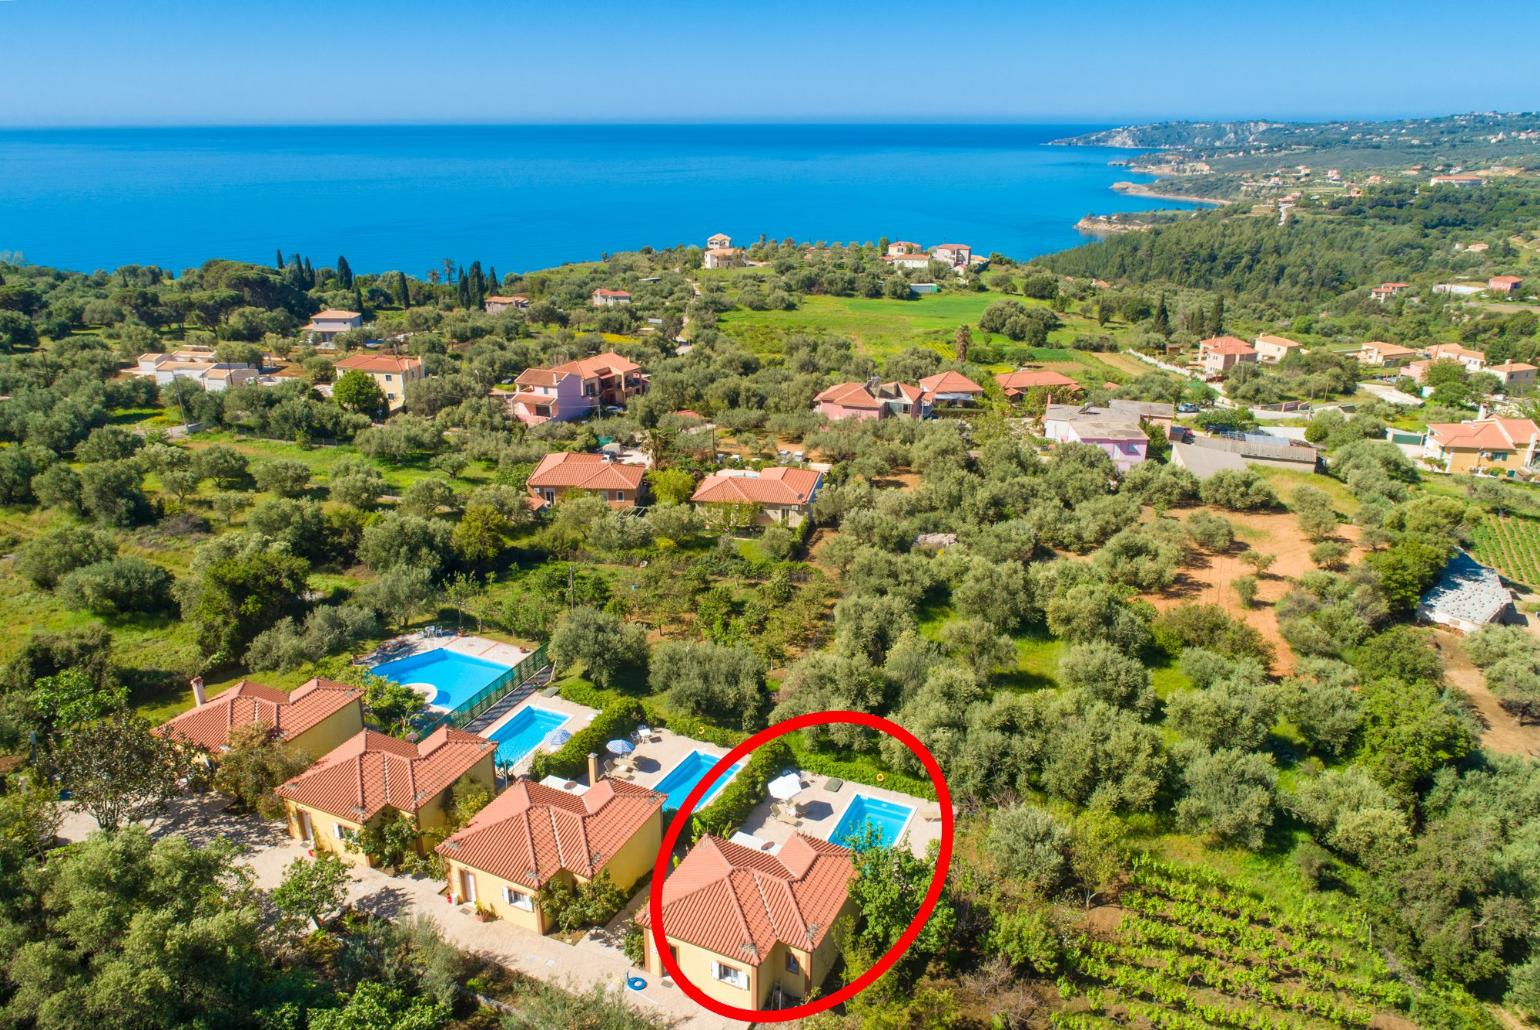 Aerial view showing location of Villa Russa Alekos